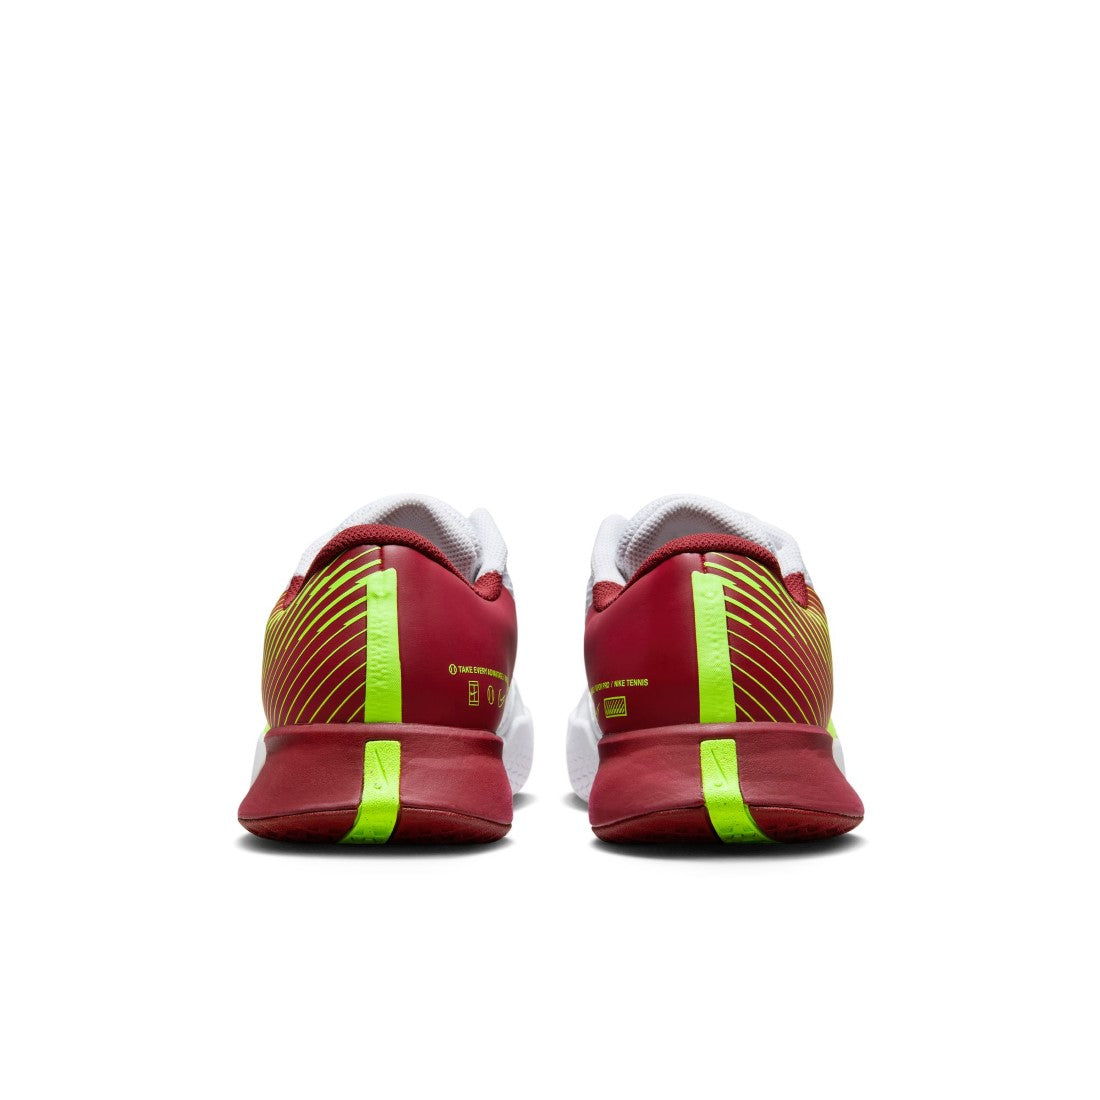 NikeCourt Air Zoom Vapor Pro 2 Tennis Shoes